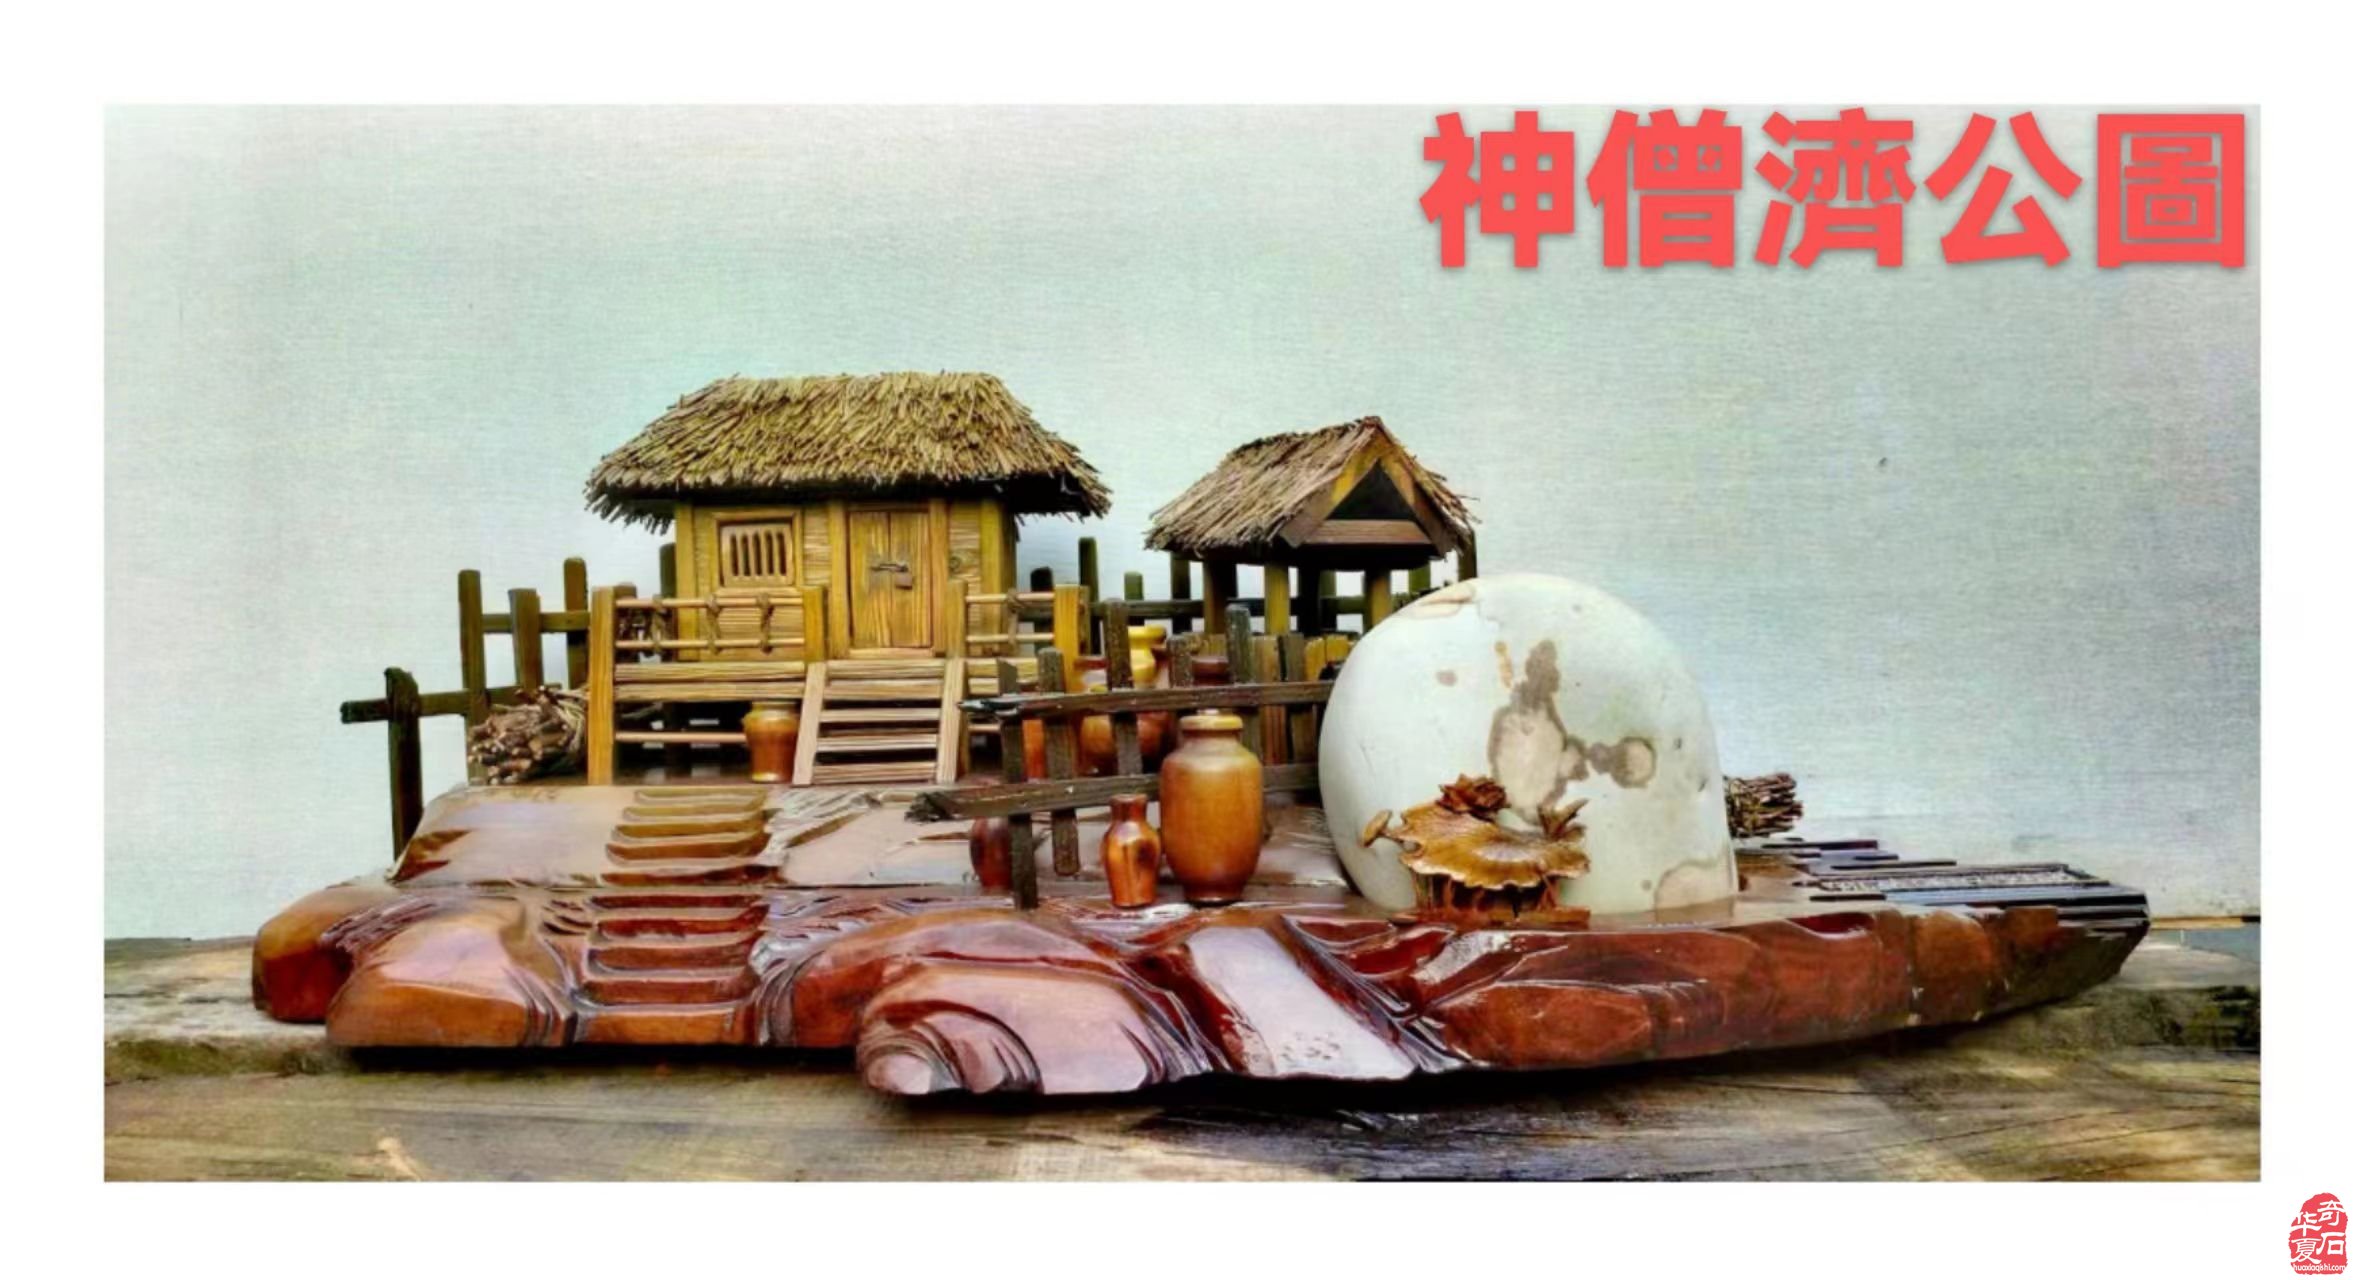 欣赏洛阳孟津国家级湿地公园黄河奇石文化馆藏品